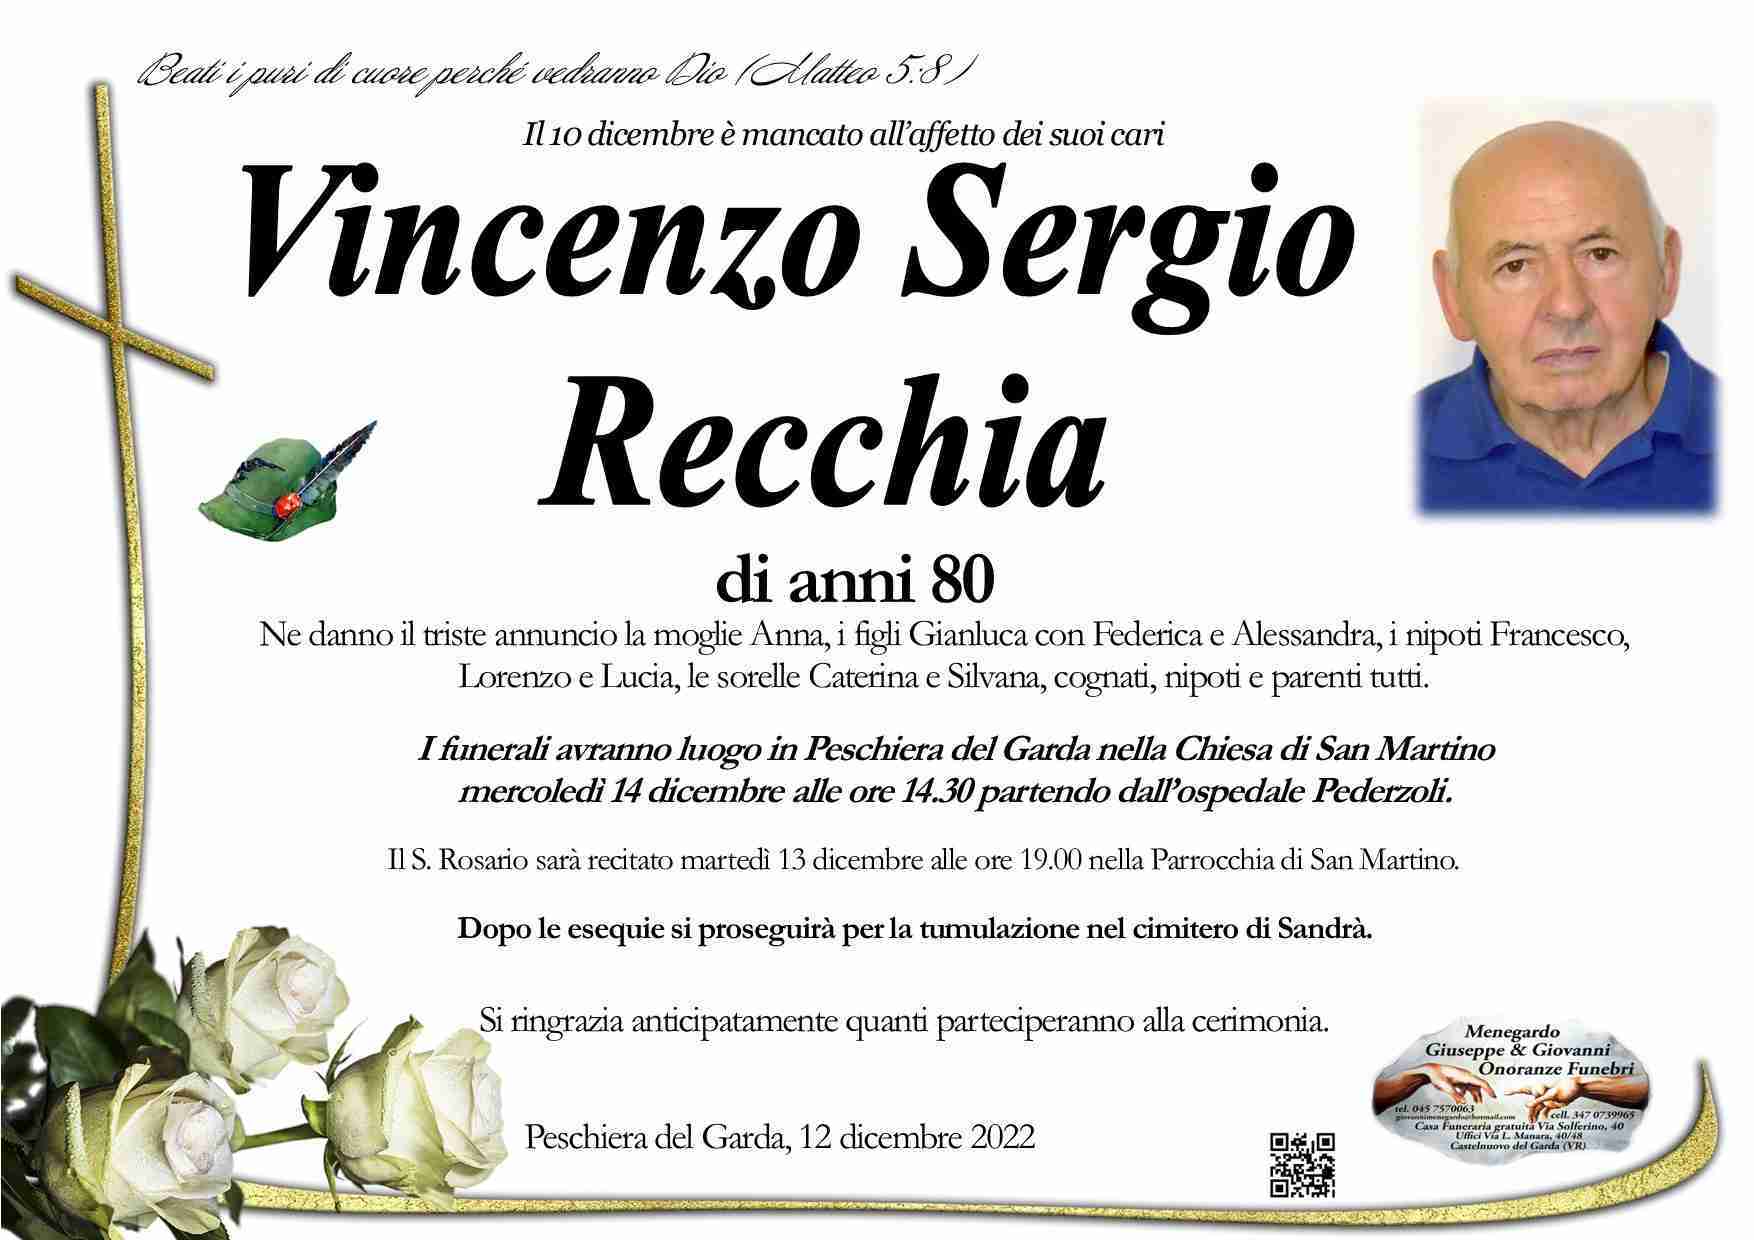 Vincenzo Sergio Recchia